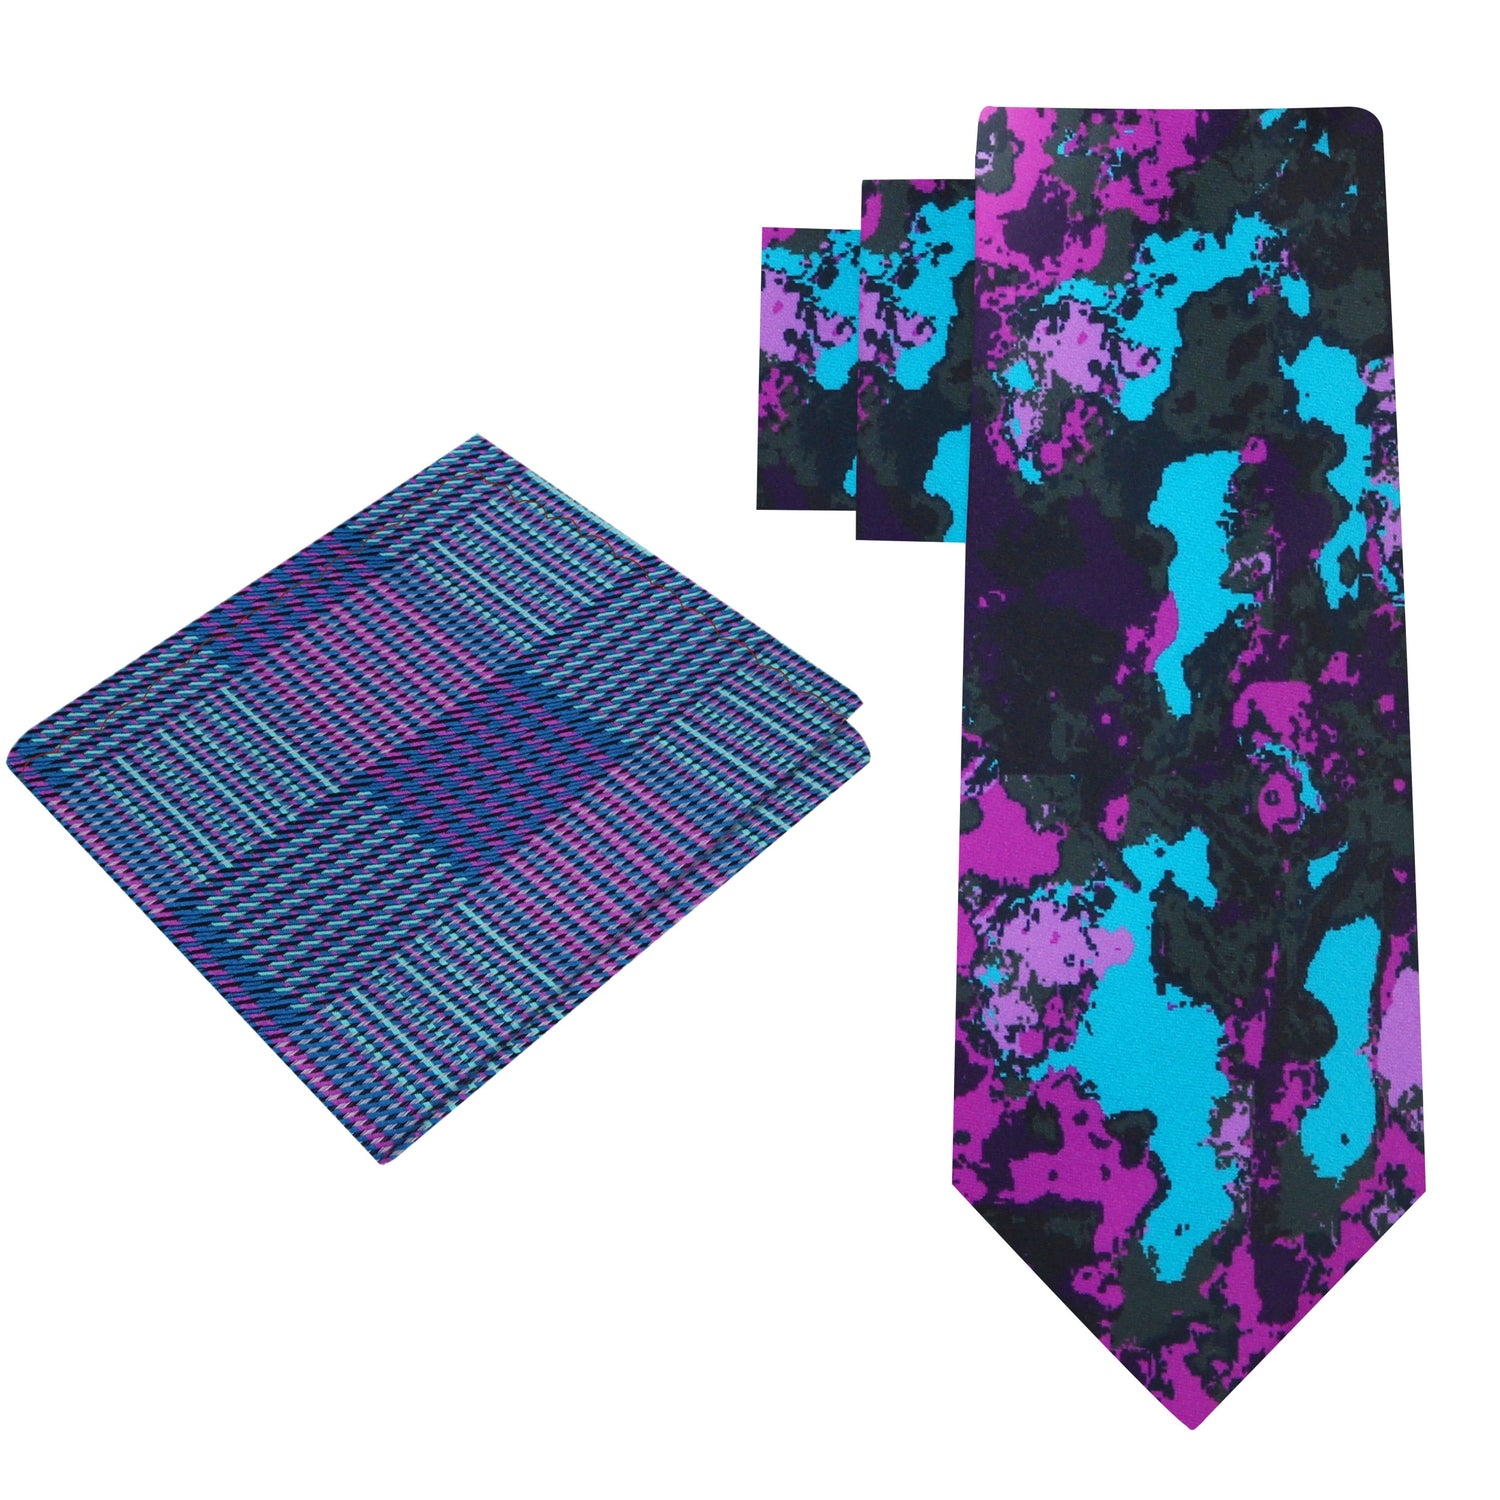 Alt View: Light Blue, Purple Ink Blot Necktie and Light Blue, Blue Pocket Square